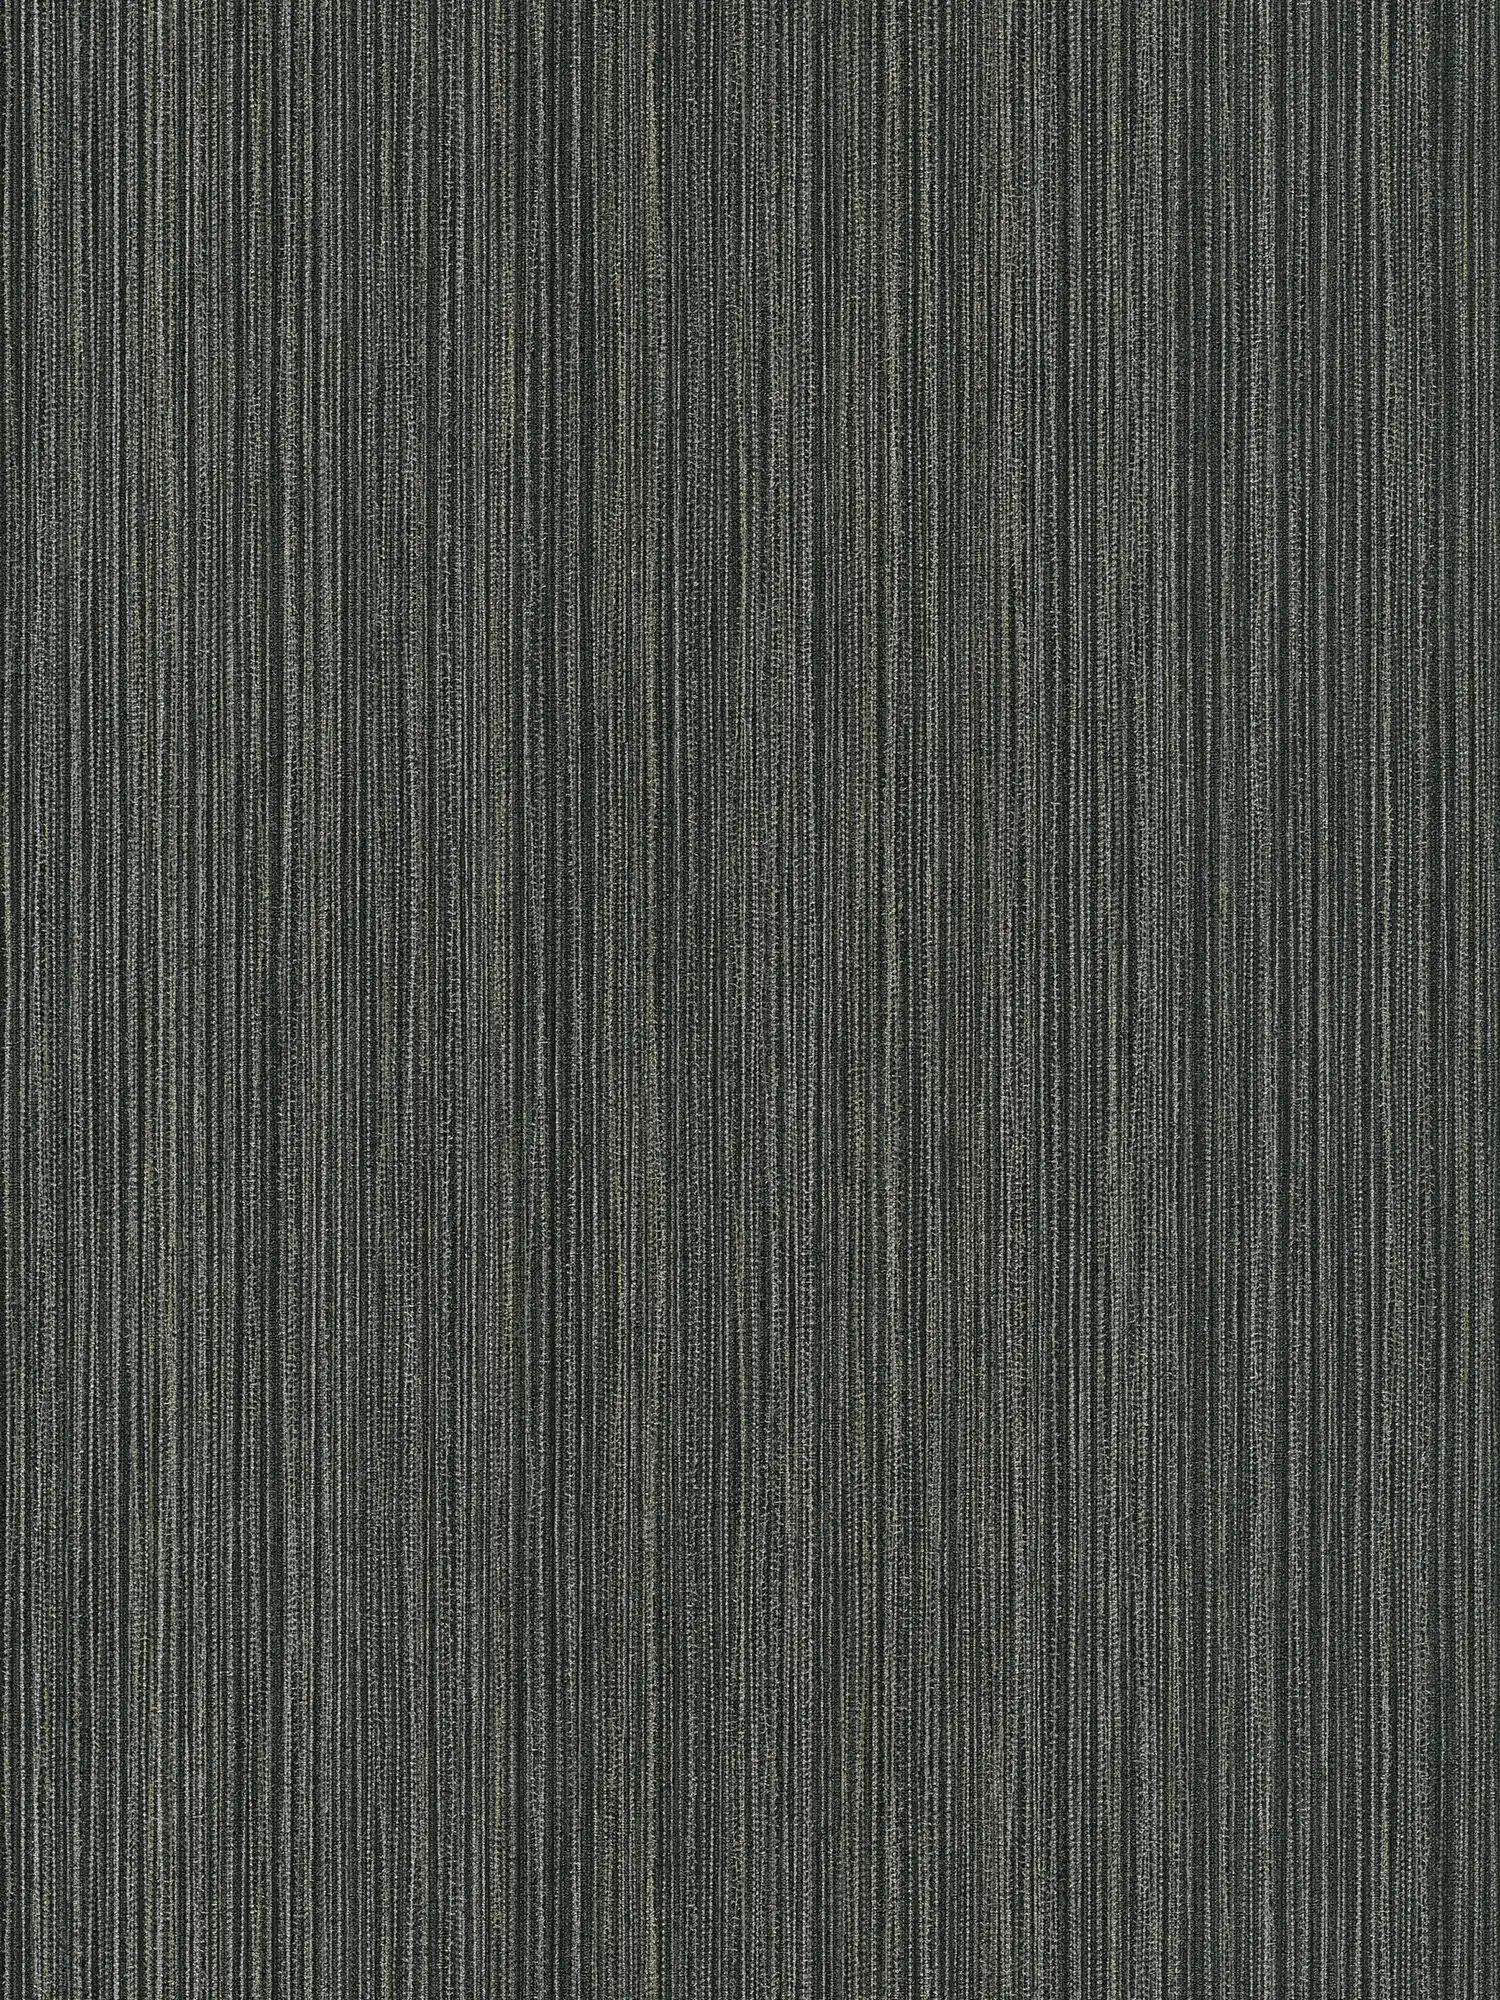 Papel pintado con diseño textil y efecto de líneas - Negro
